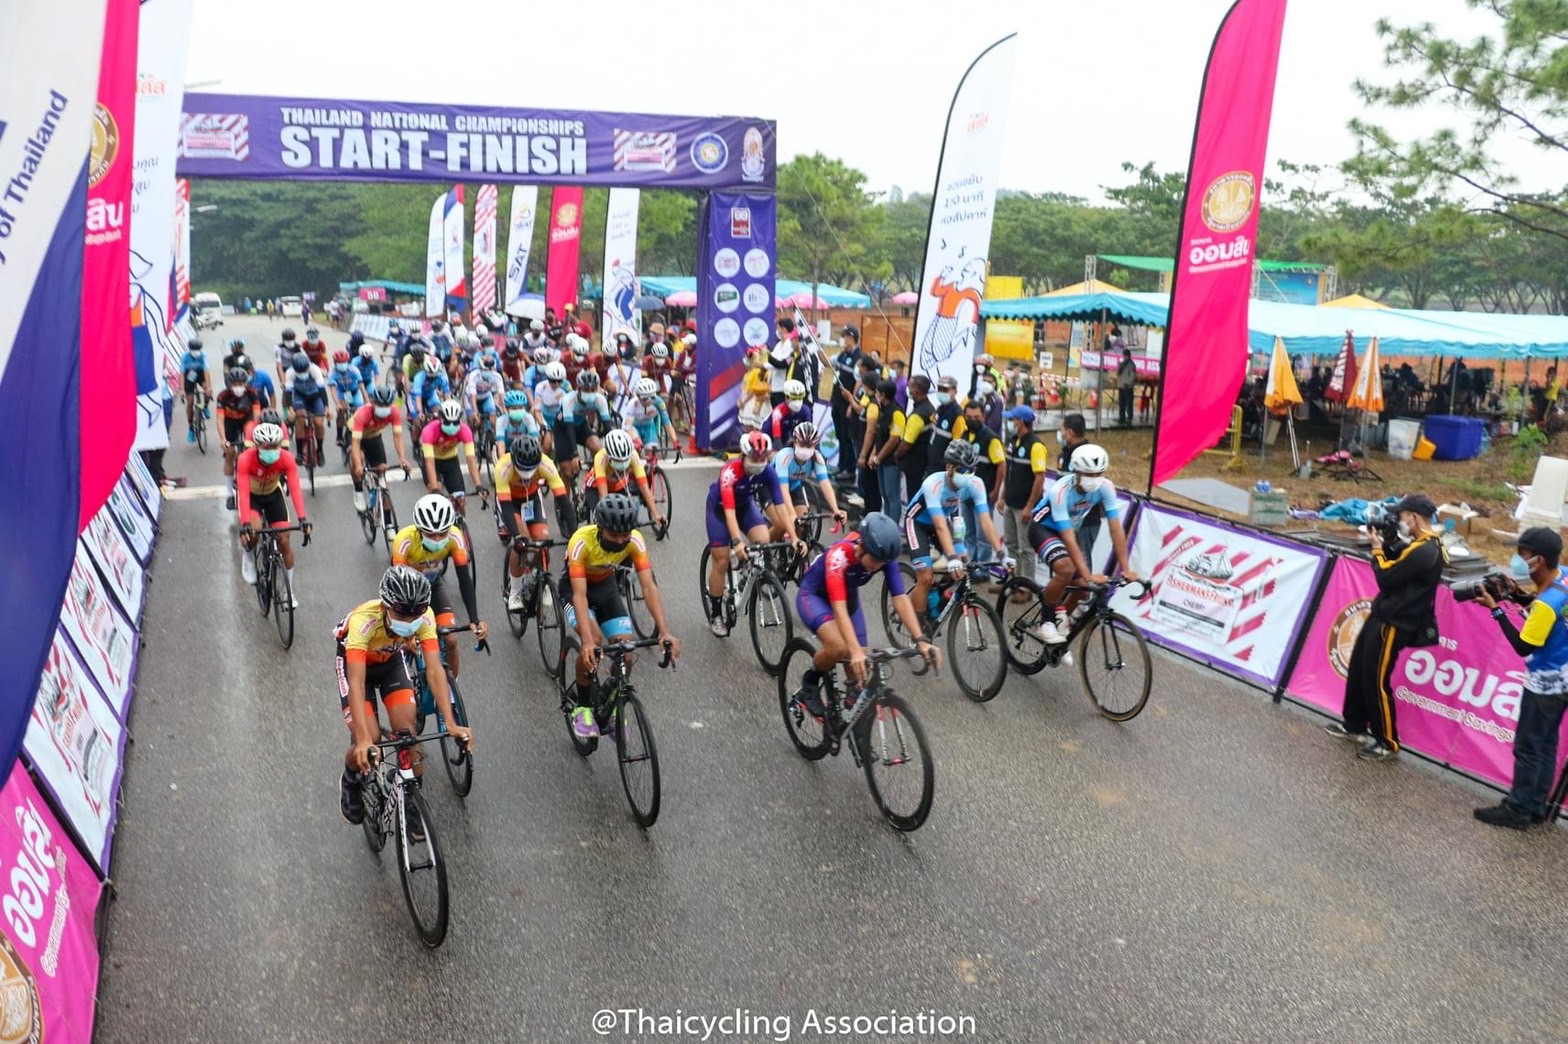 การแข่งขันจักรยานประเภทถนน ชิงแชมป์ประเทศไทย ชิงถ้วยพระราชทานฯ และการแข่งขันจักรยานเมาเท่นไบค์ ชิงแชมป์ประเทศไทย ชิงถ้วยพระราชทานฯ สนามที่ 2 จังหวัดศรีสะเกษ